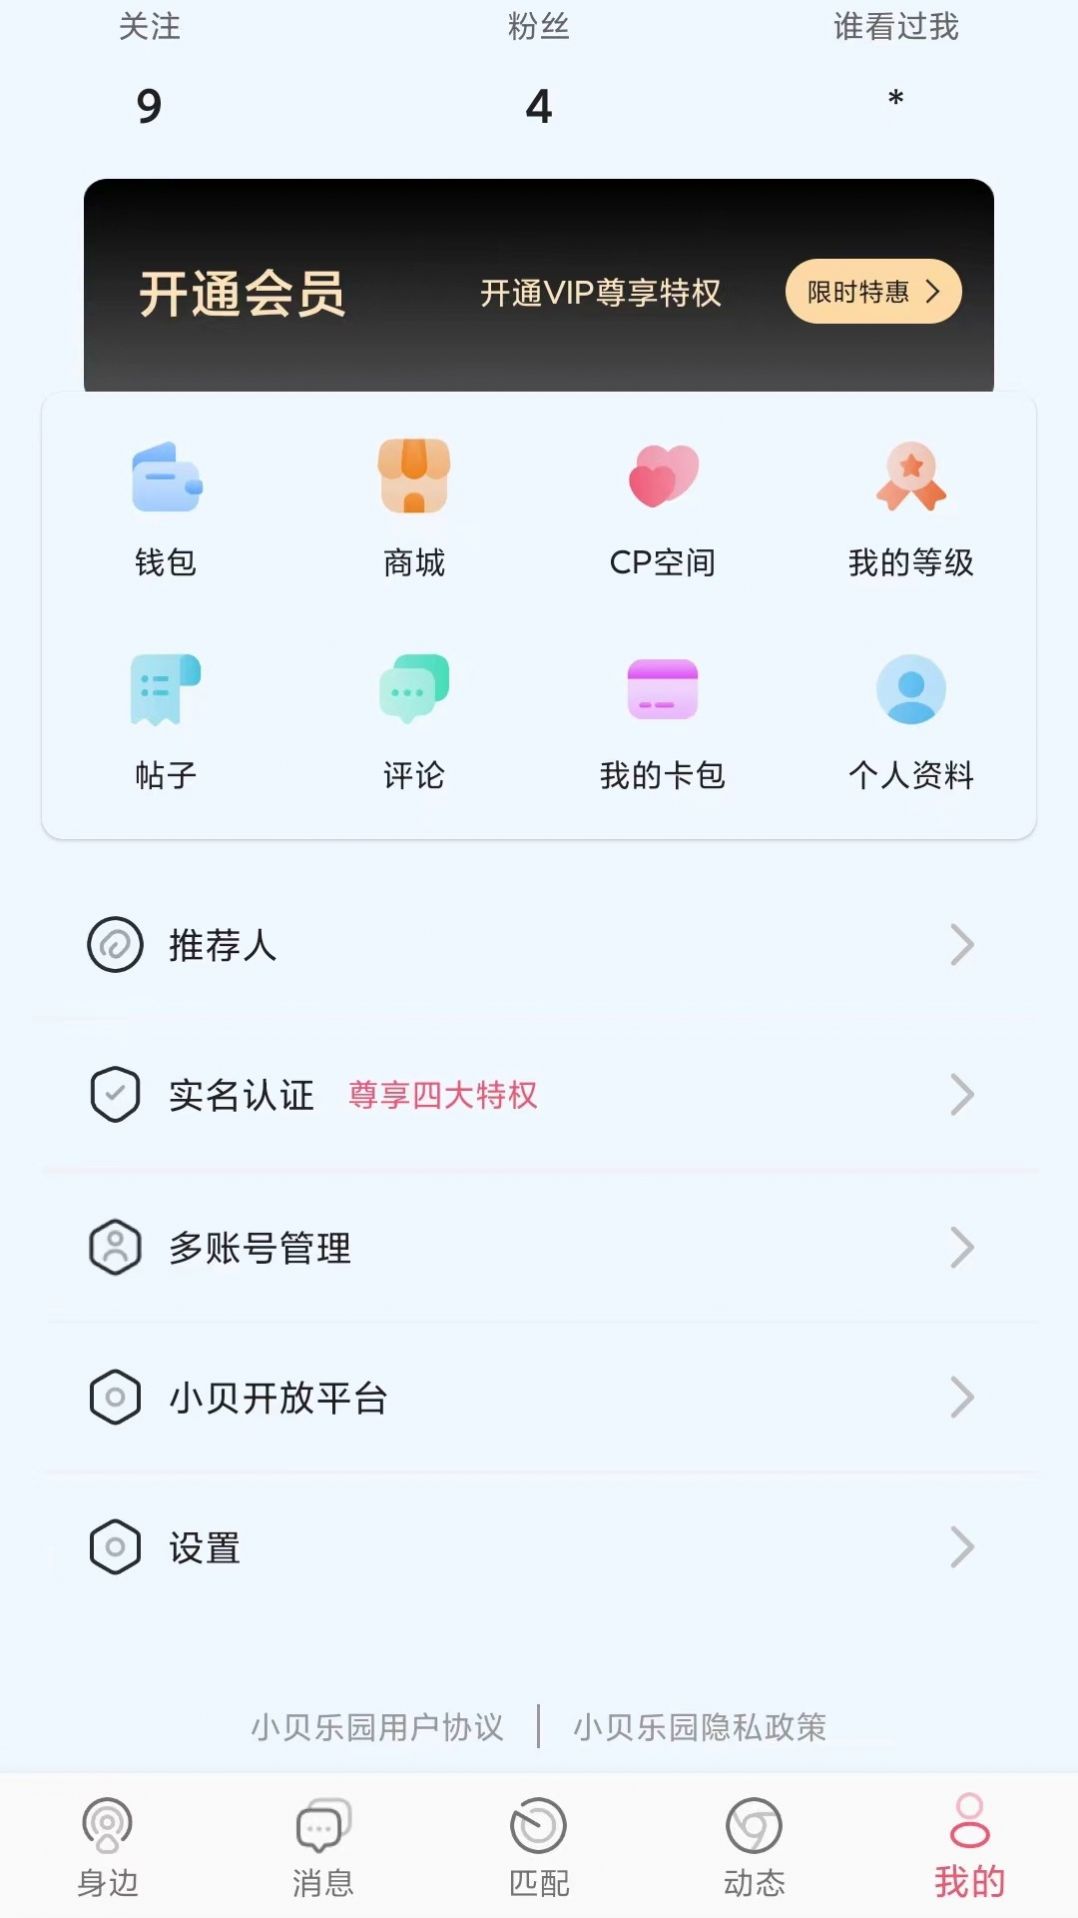 小贝乐园平台交友app官方版图片1